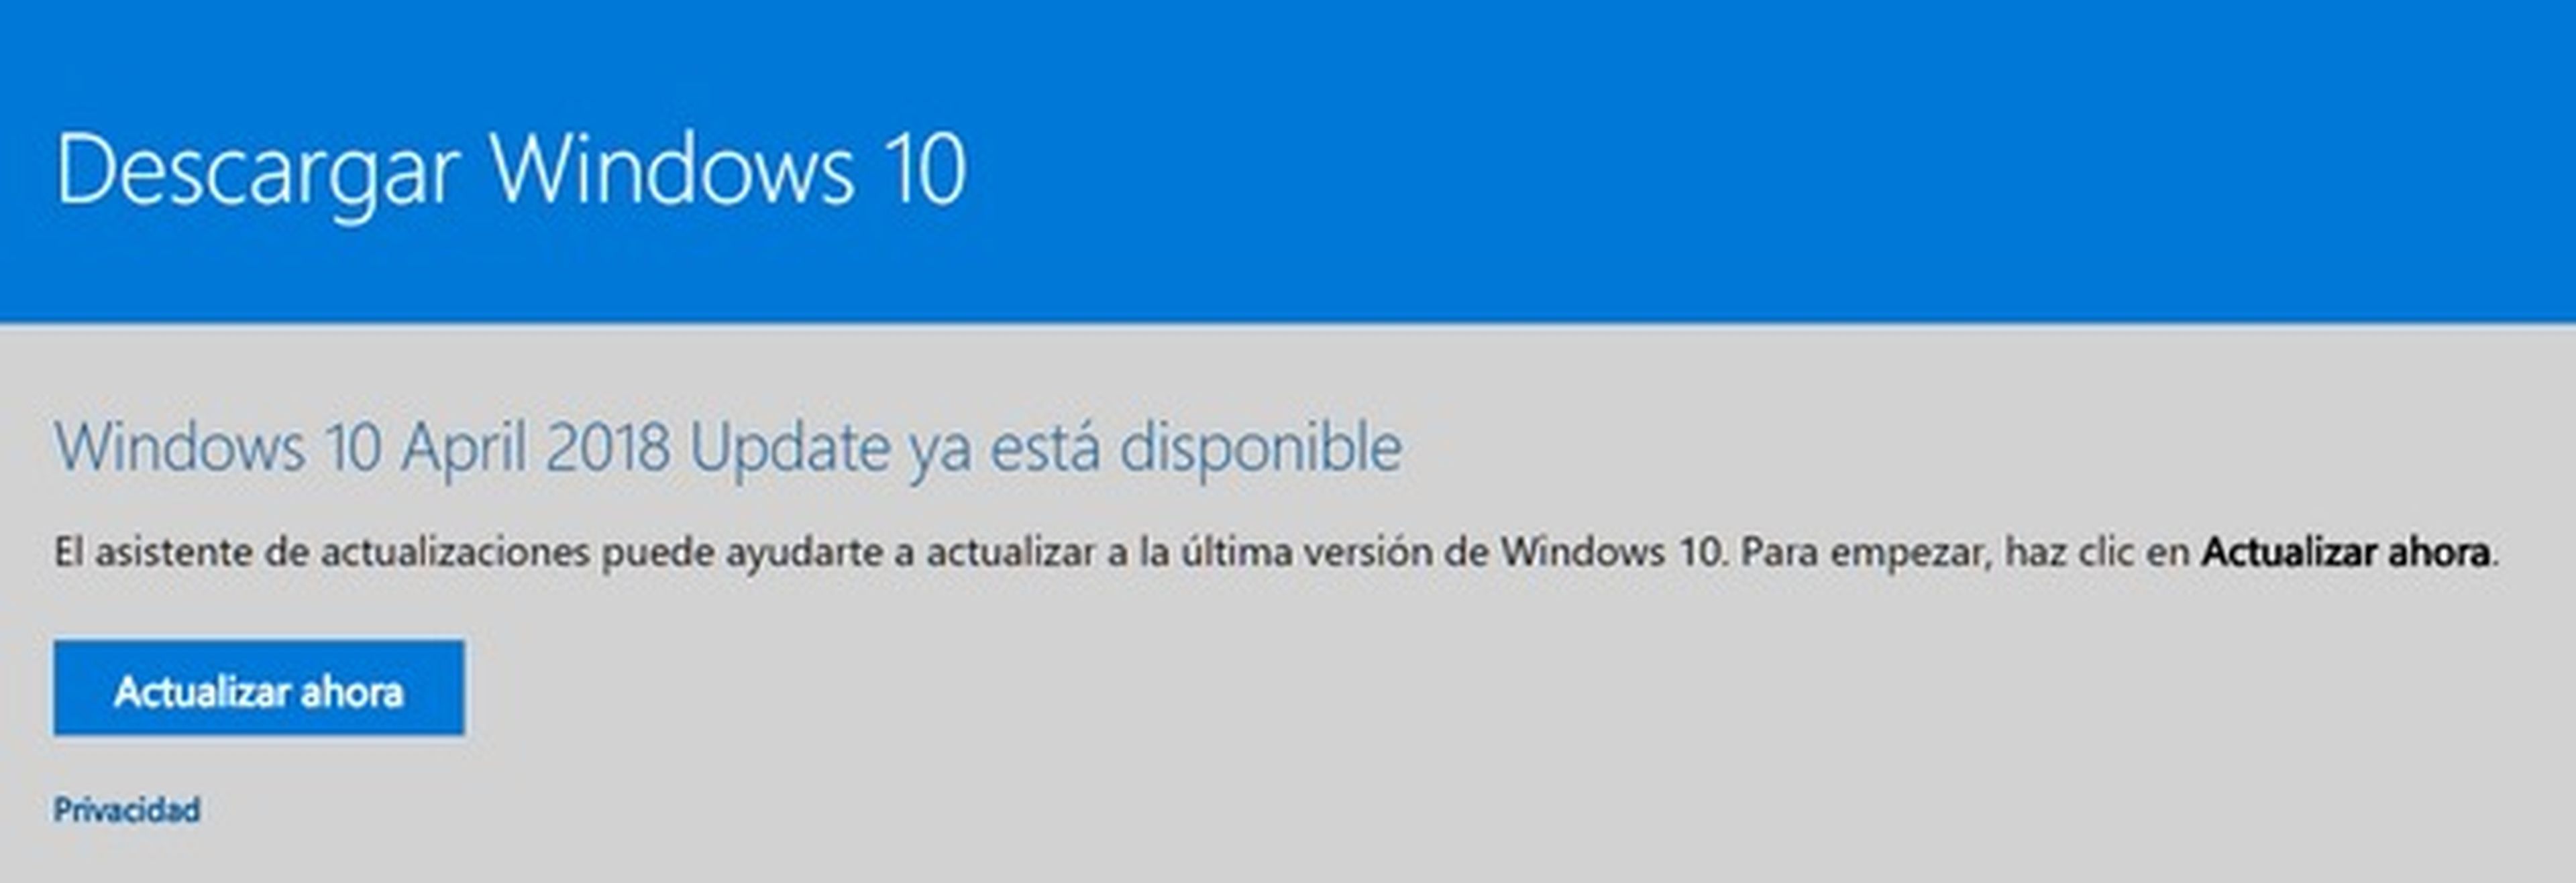 Ya puedes descargar Windows 10 April 2018 Update, te explicamos cómo